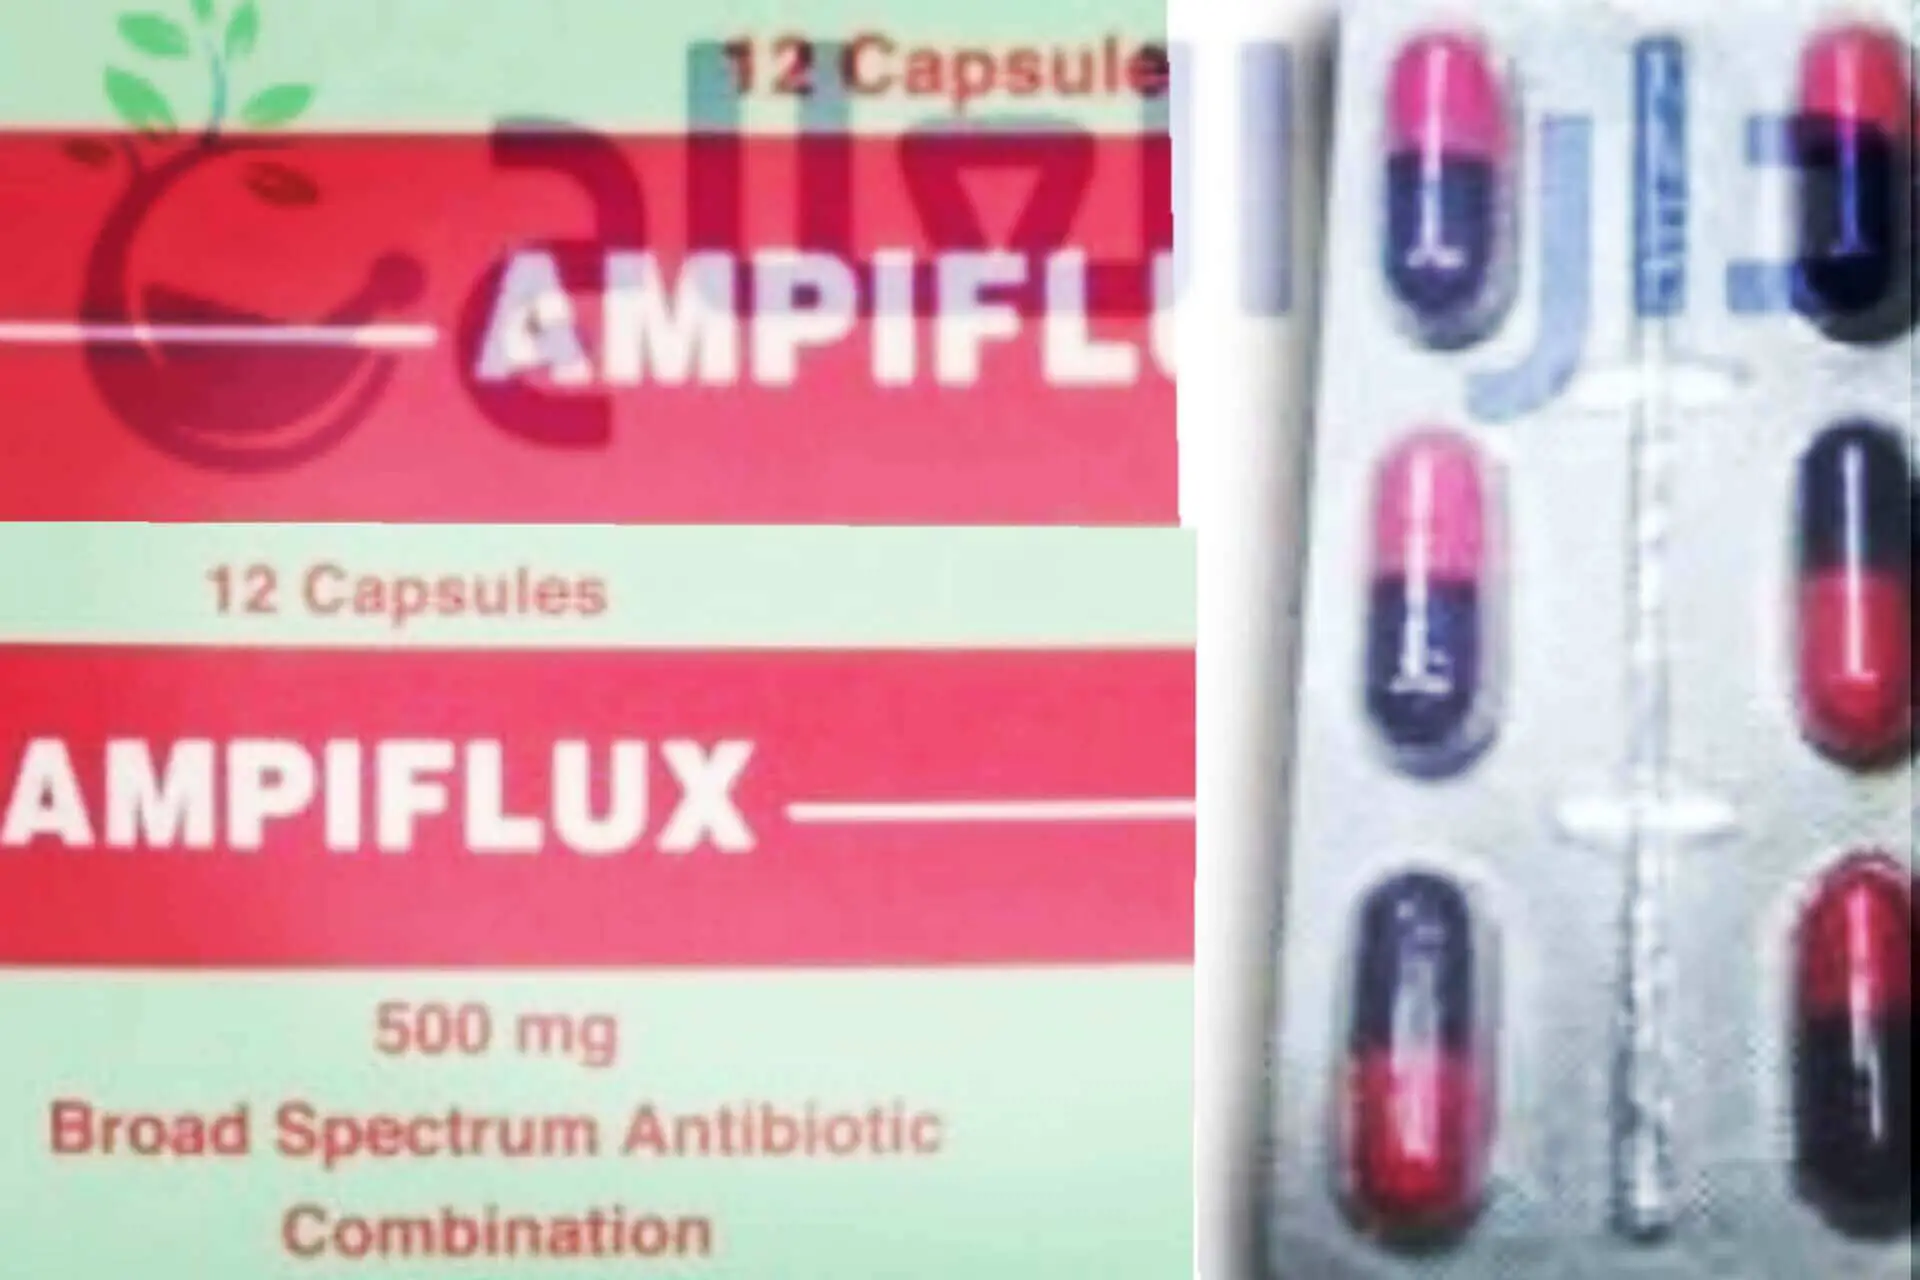 امبيفلوكس - اقراص امبيفلوكس- دواء امبيفلوكس - امبيفلوكس اقراص - برشام امبيفلوكس - علاج امبيفلوكس - ampiflux